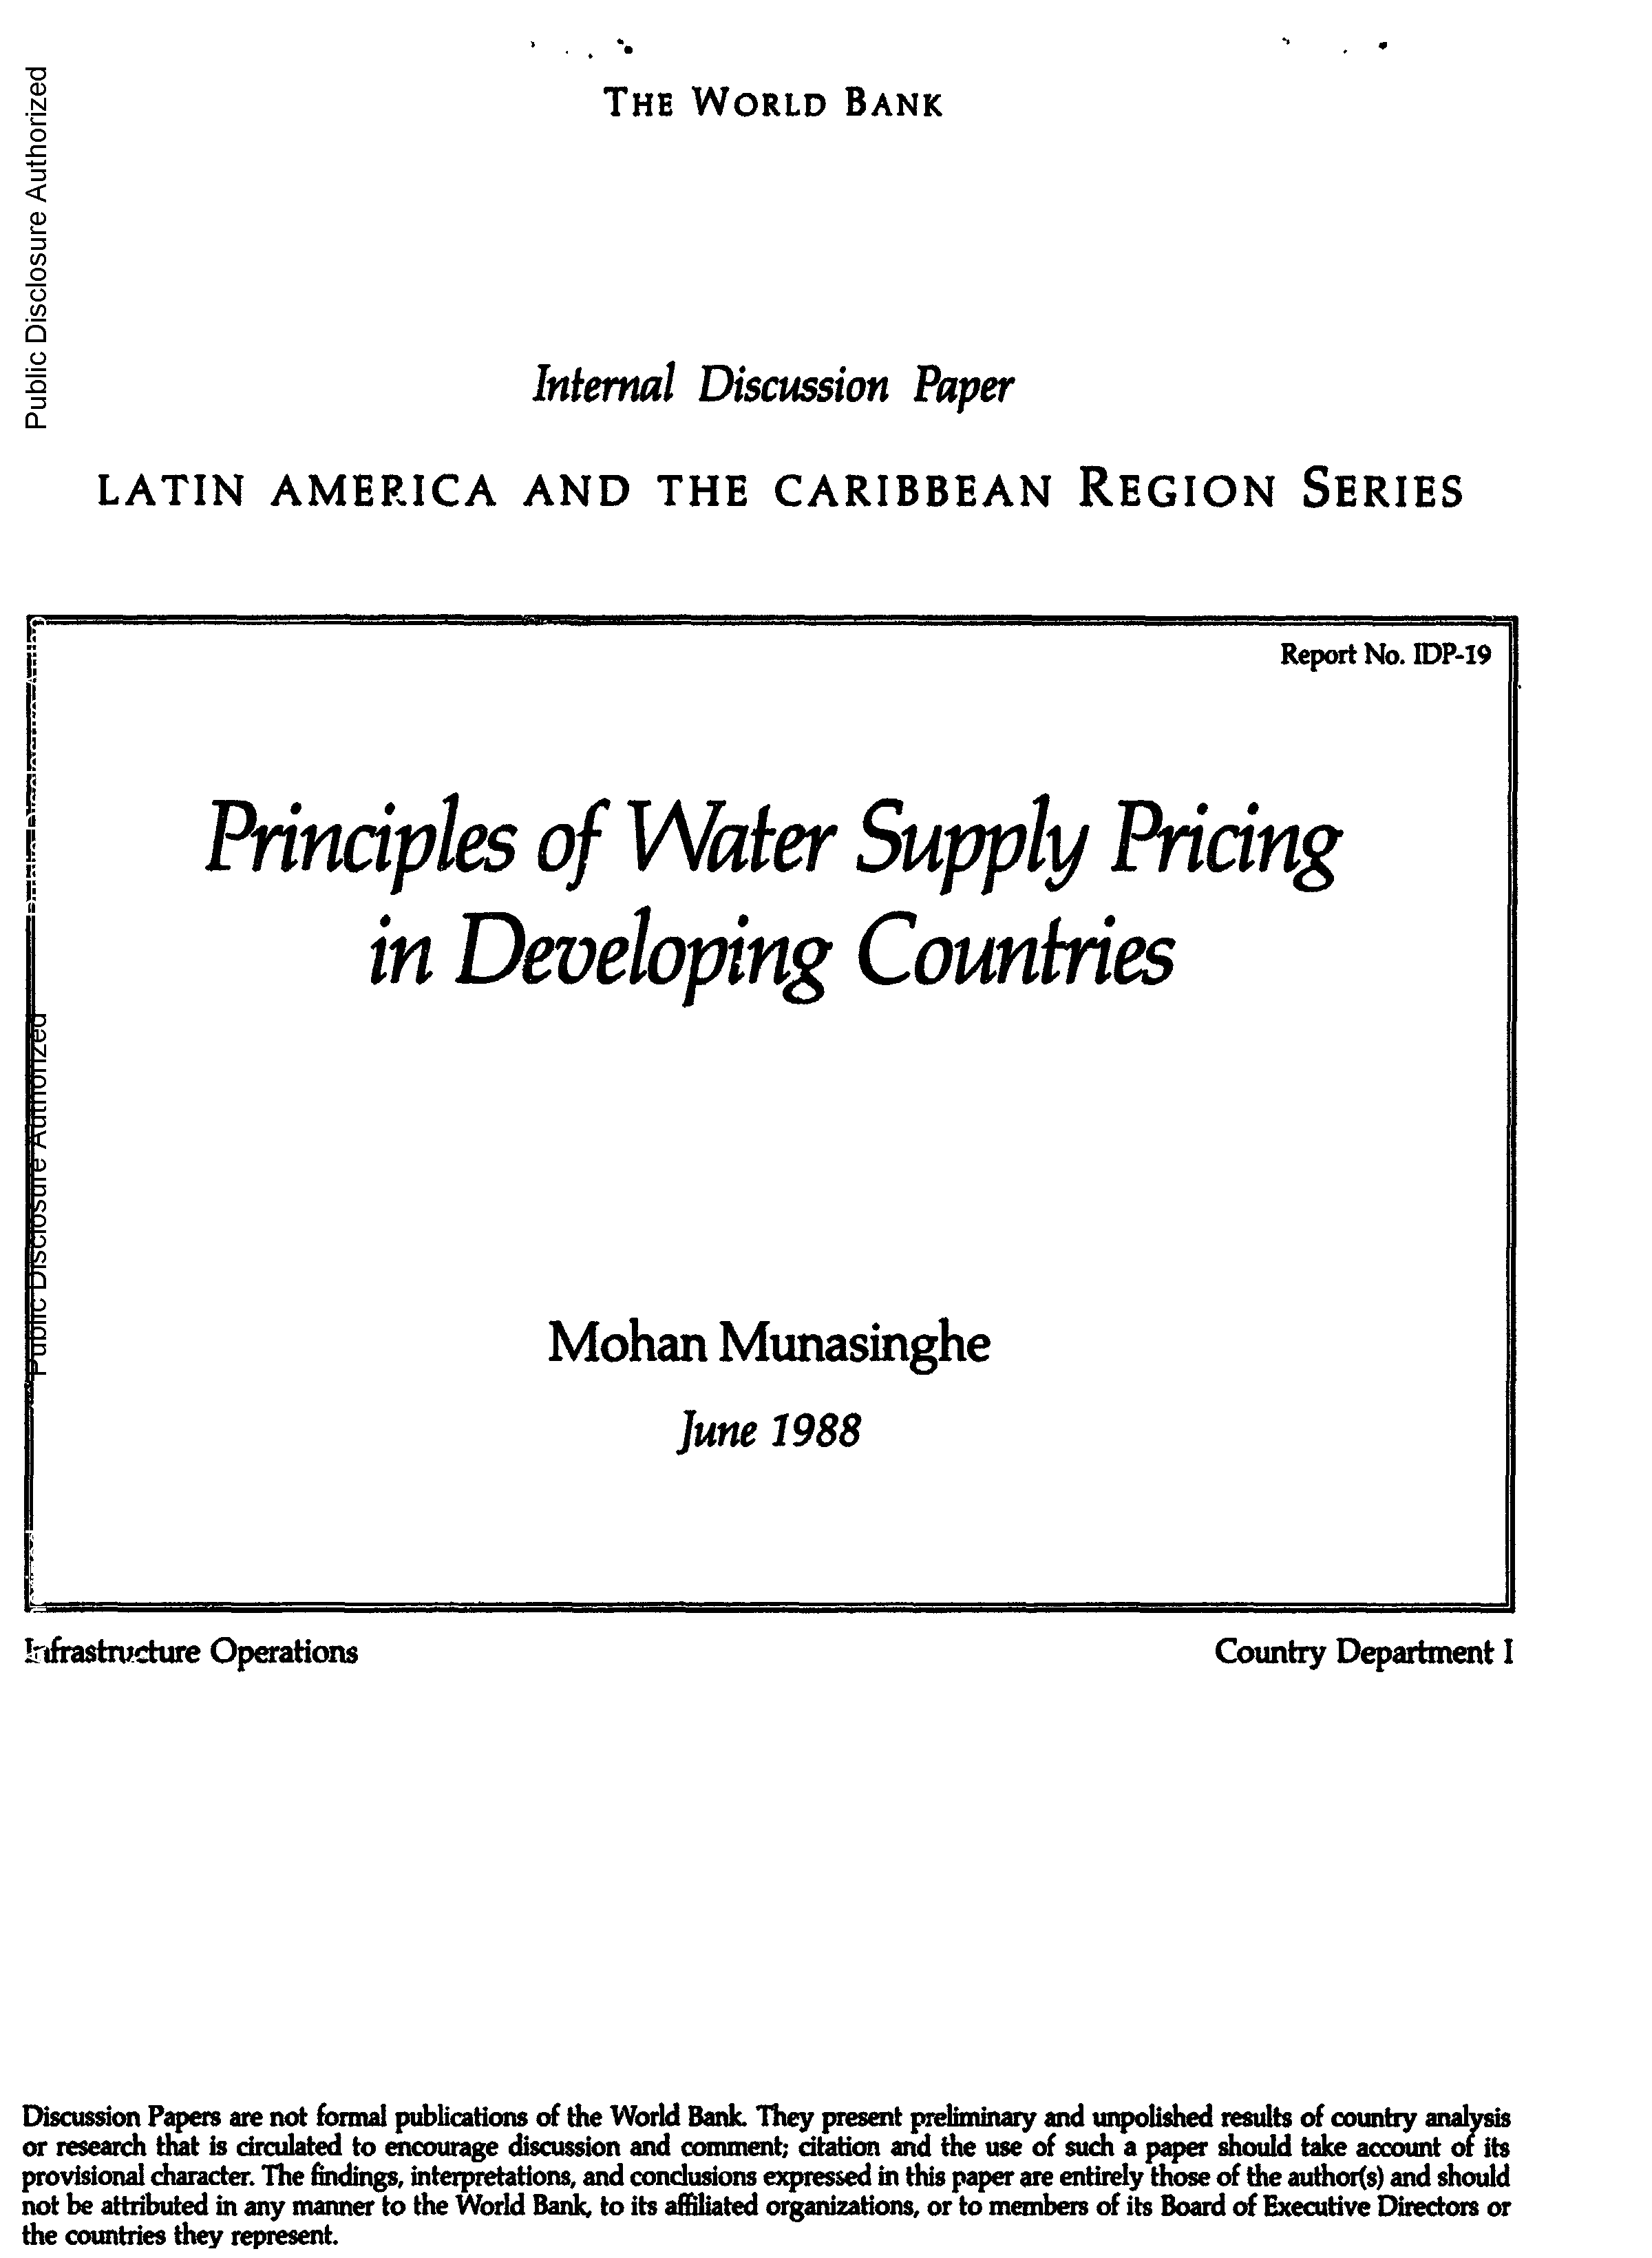 Page de couverture de Principes de tarification de l'approvisionnement en eau dans les pays en développement